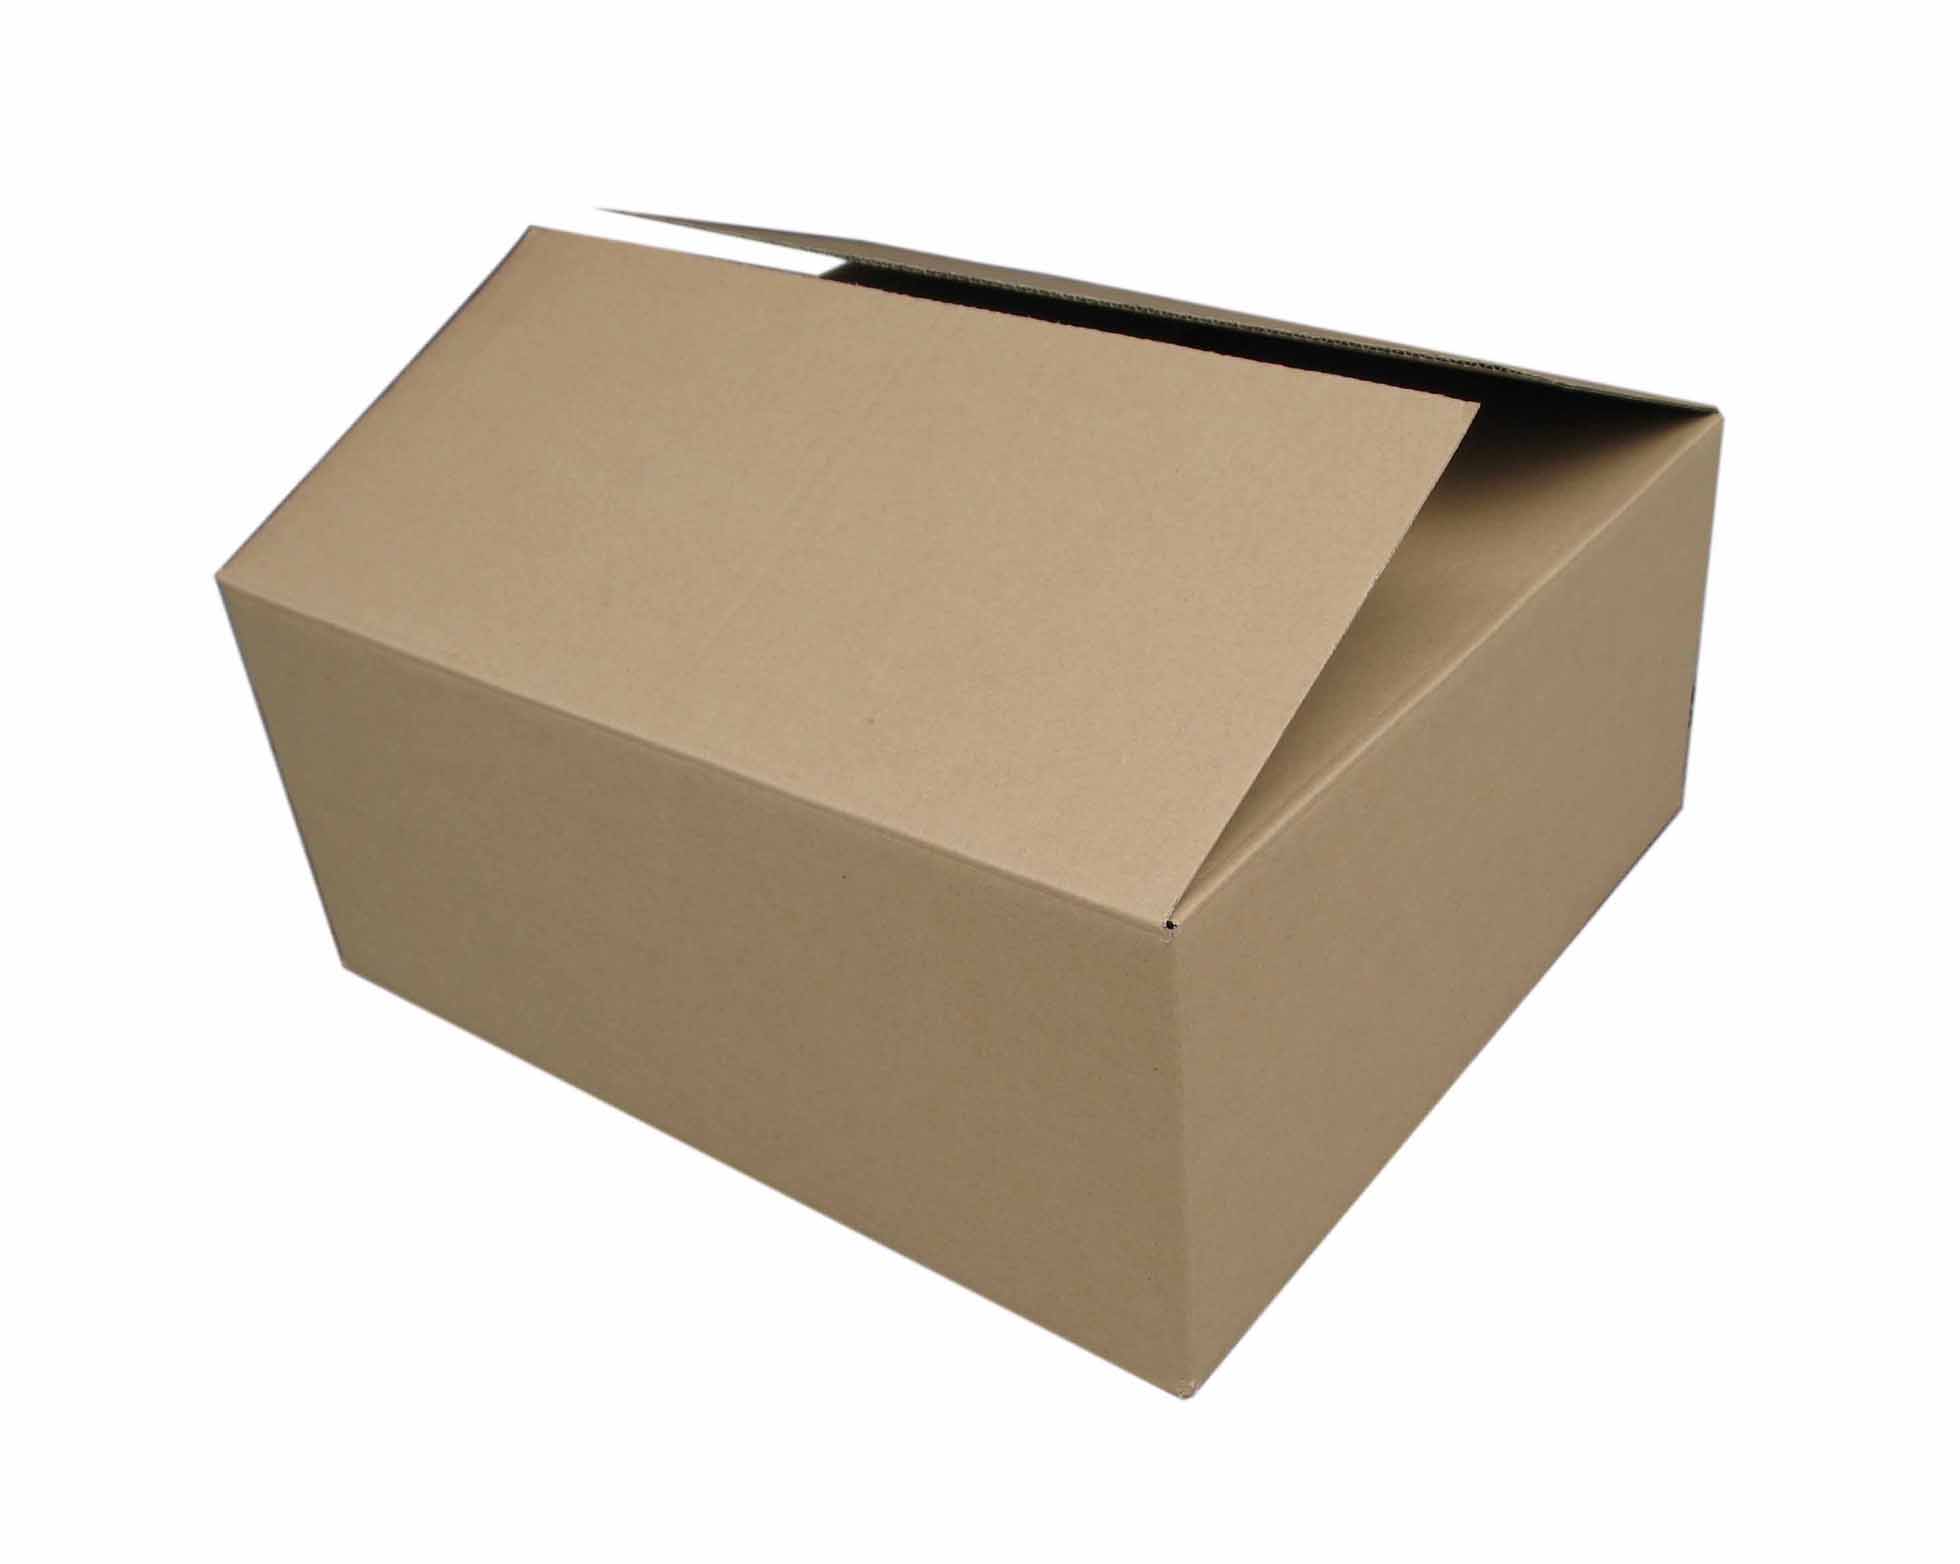 Carton Box - 1 - China Carton Boxes, Carton Box